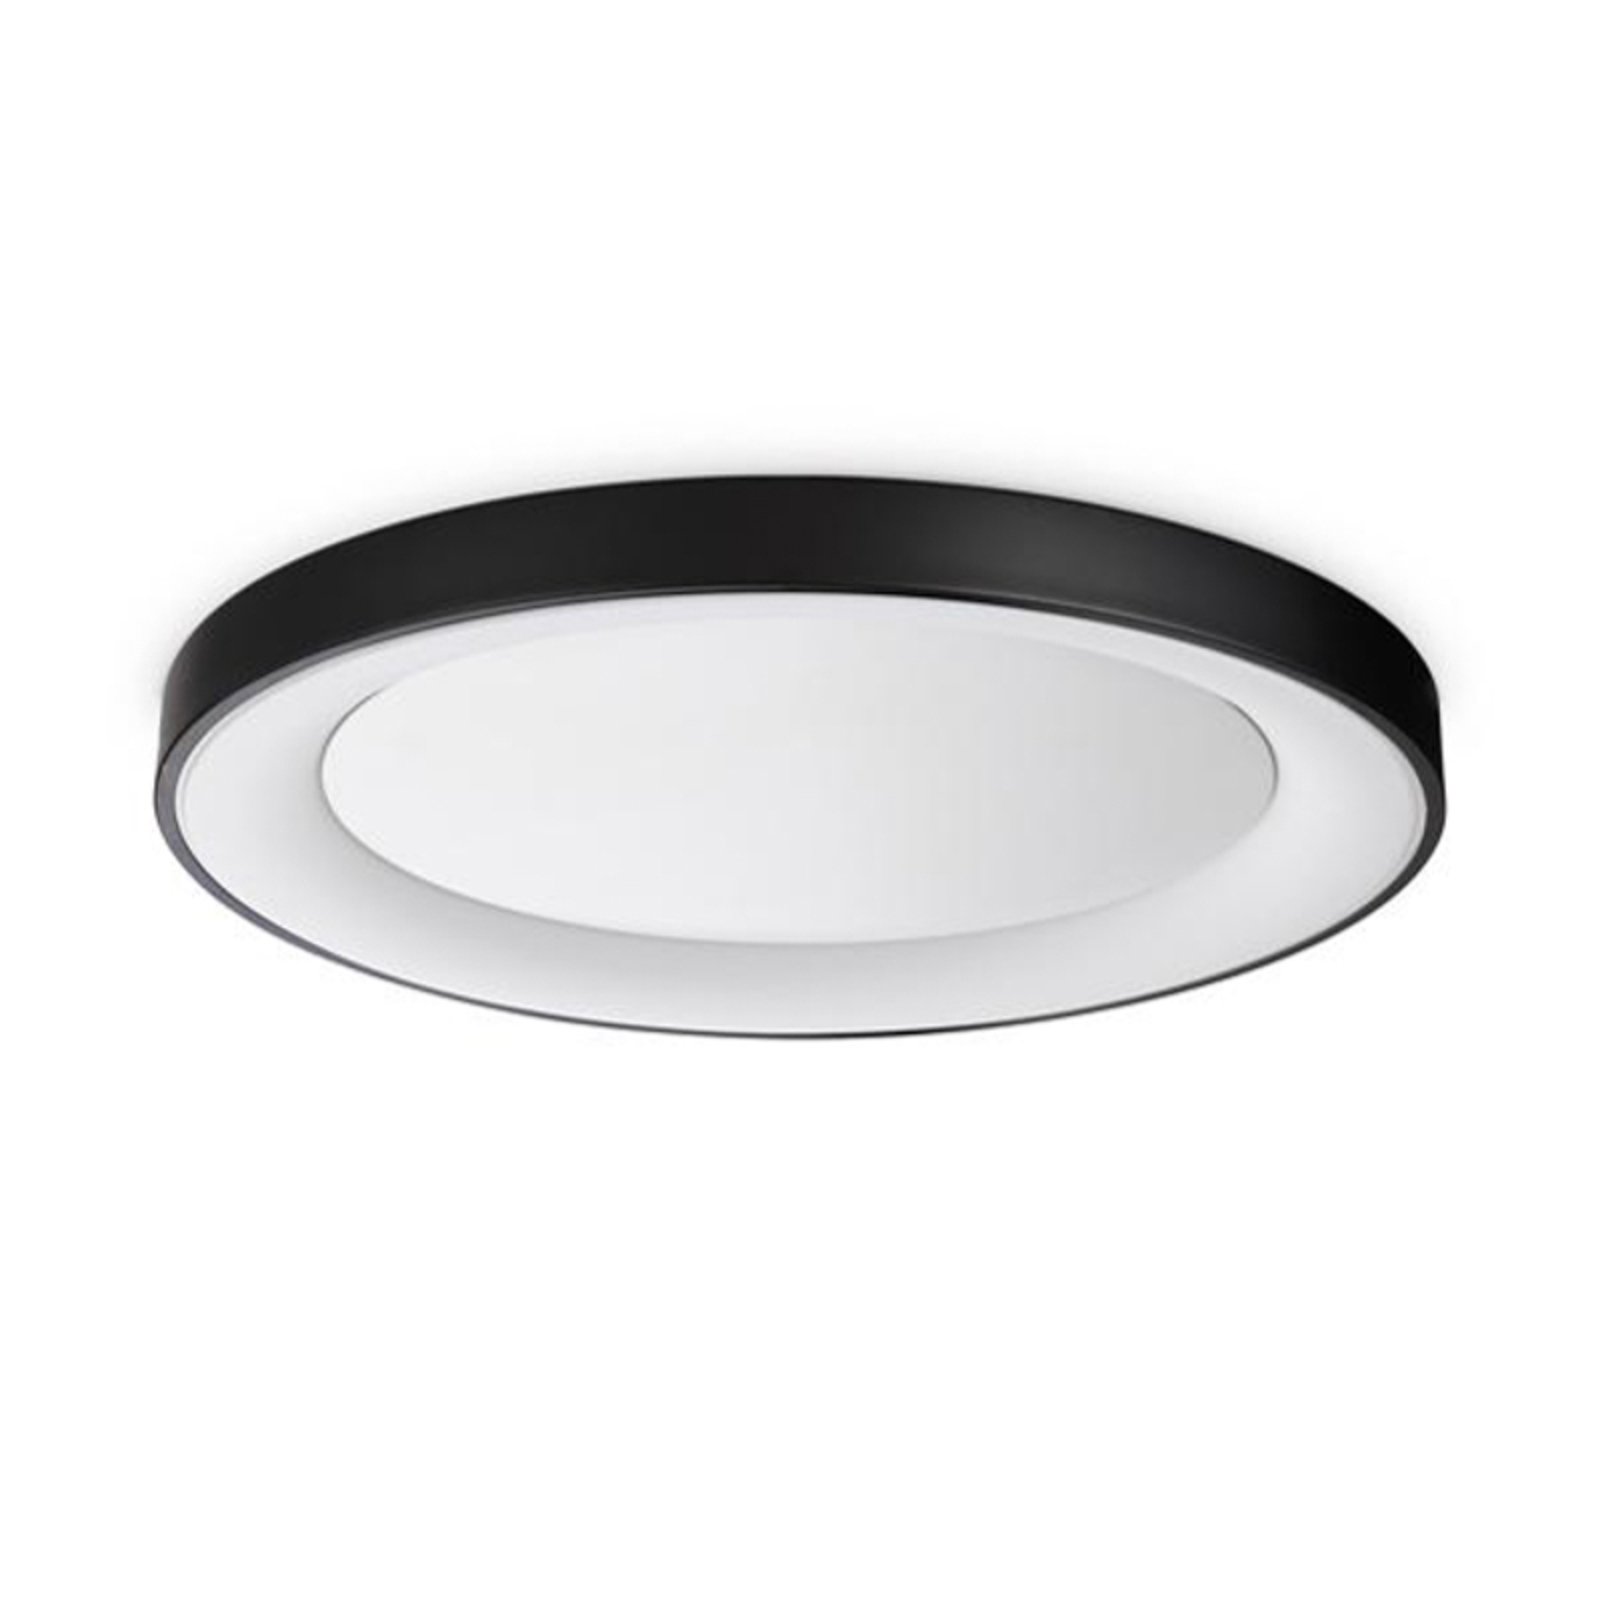 Ideal Lux plafondlamp Planet, zwart, Ø 60 cm, metaal